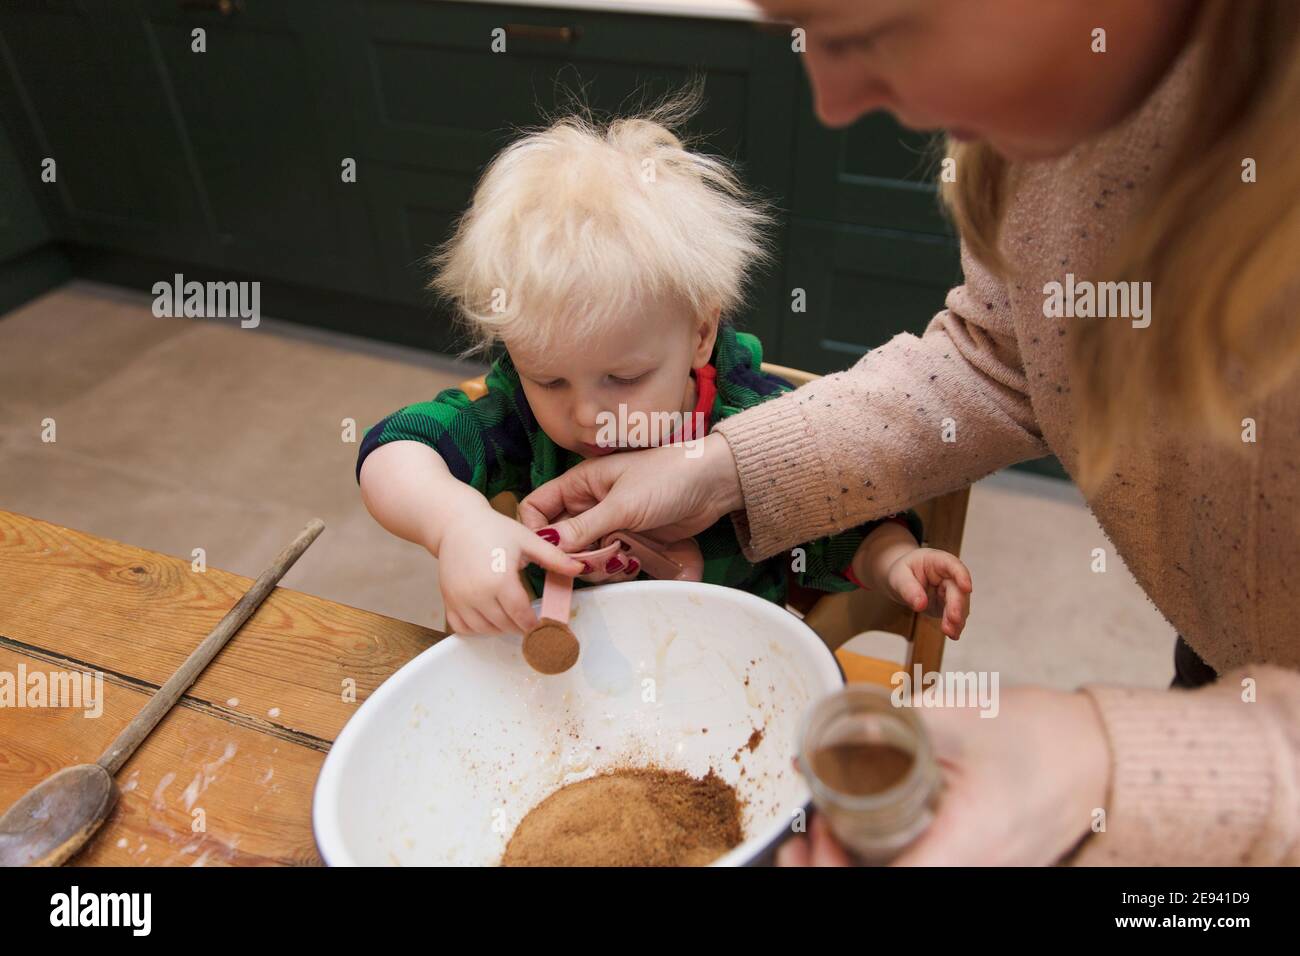 Kleiner Junge, der seiner Mutter dabei hilft, Zutaten in eine Schüssel in der Küche zu geben. Stockfoto